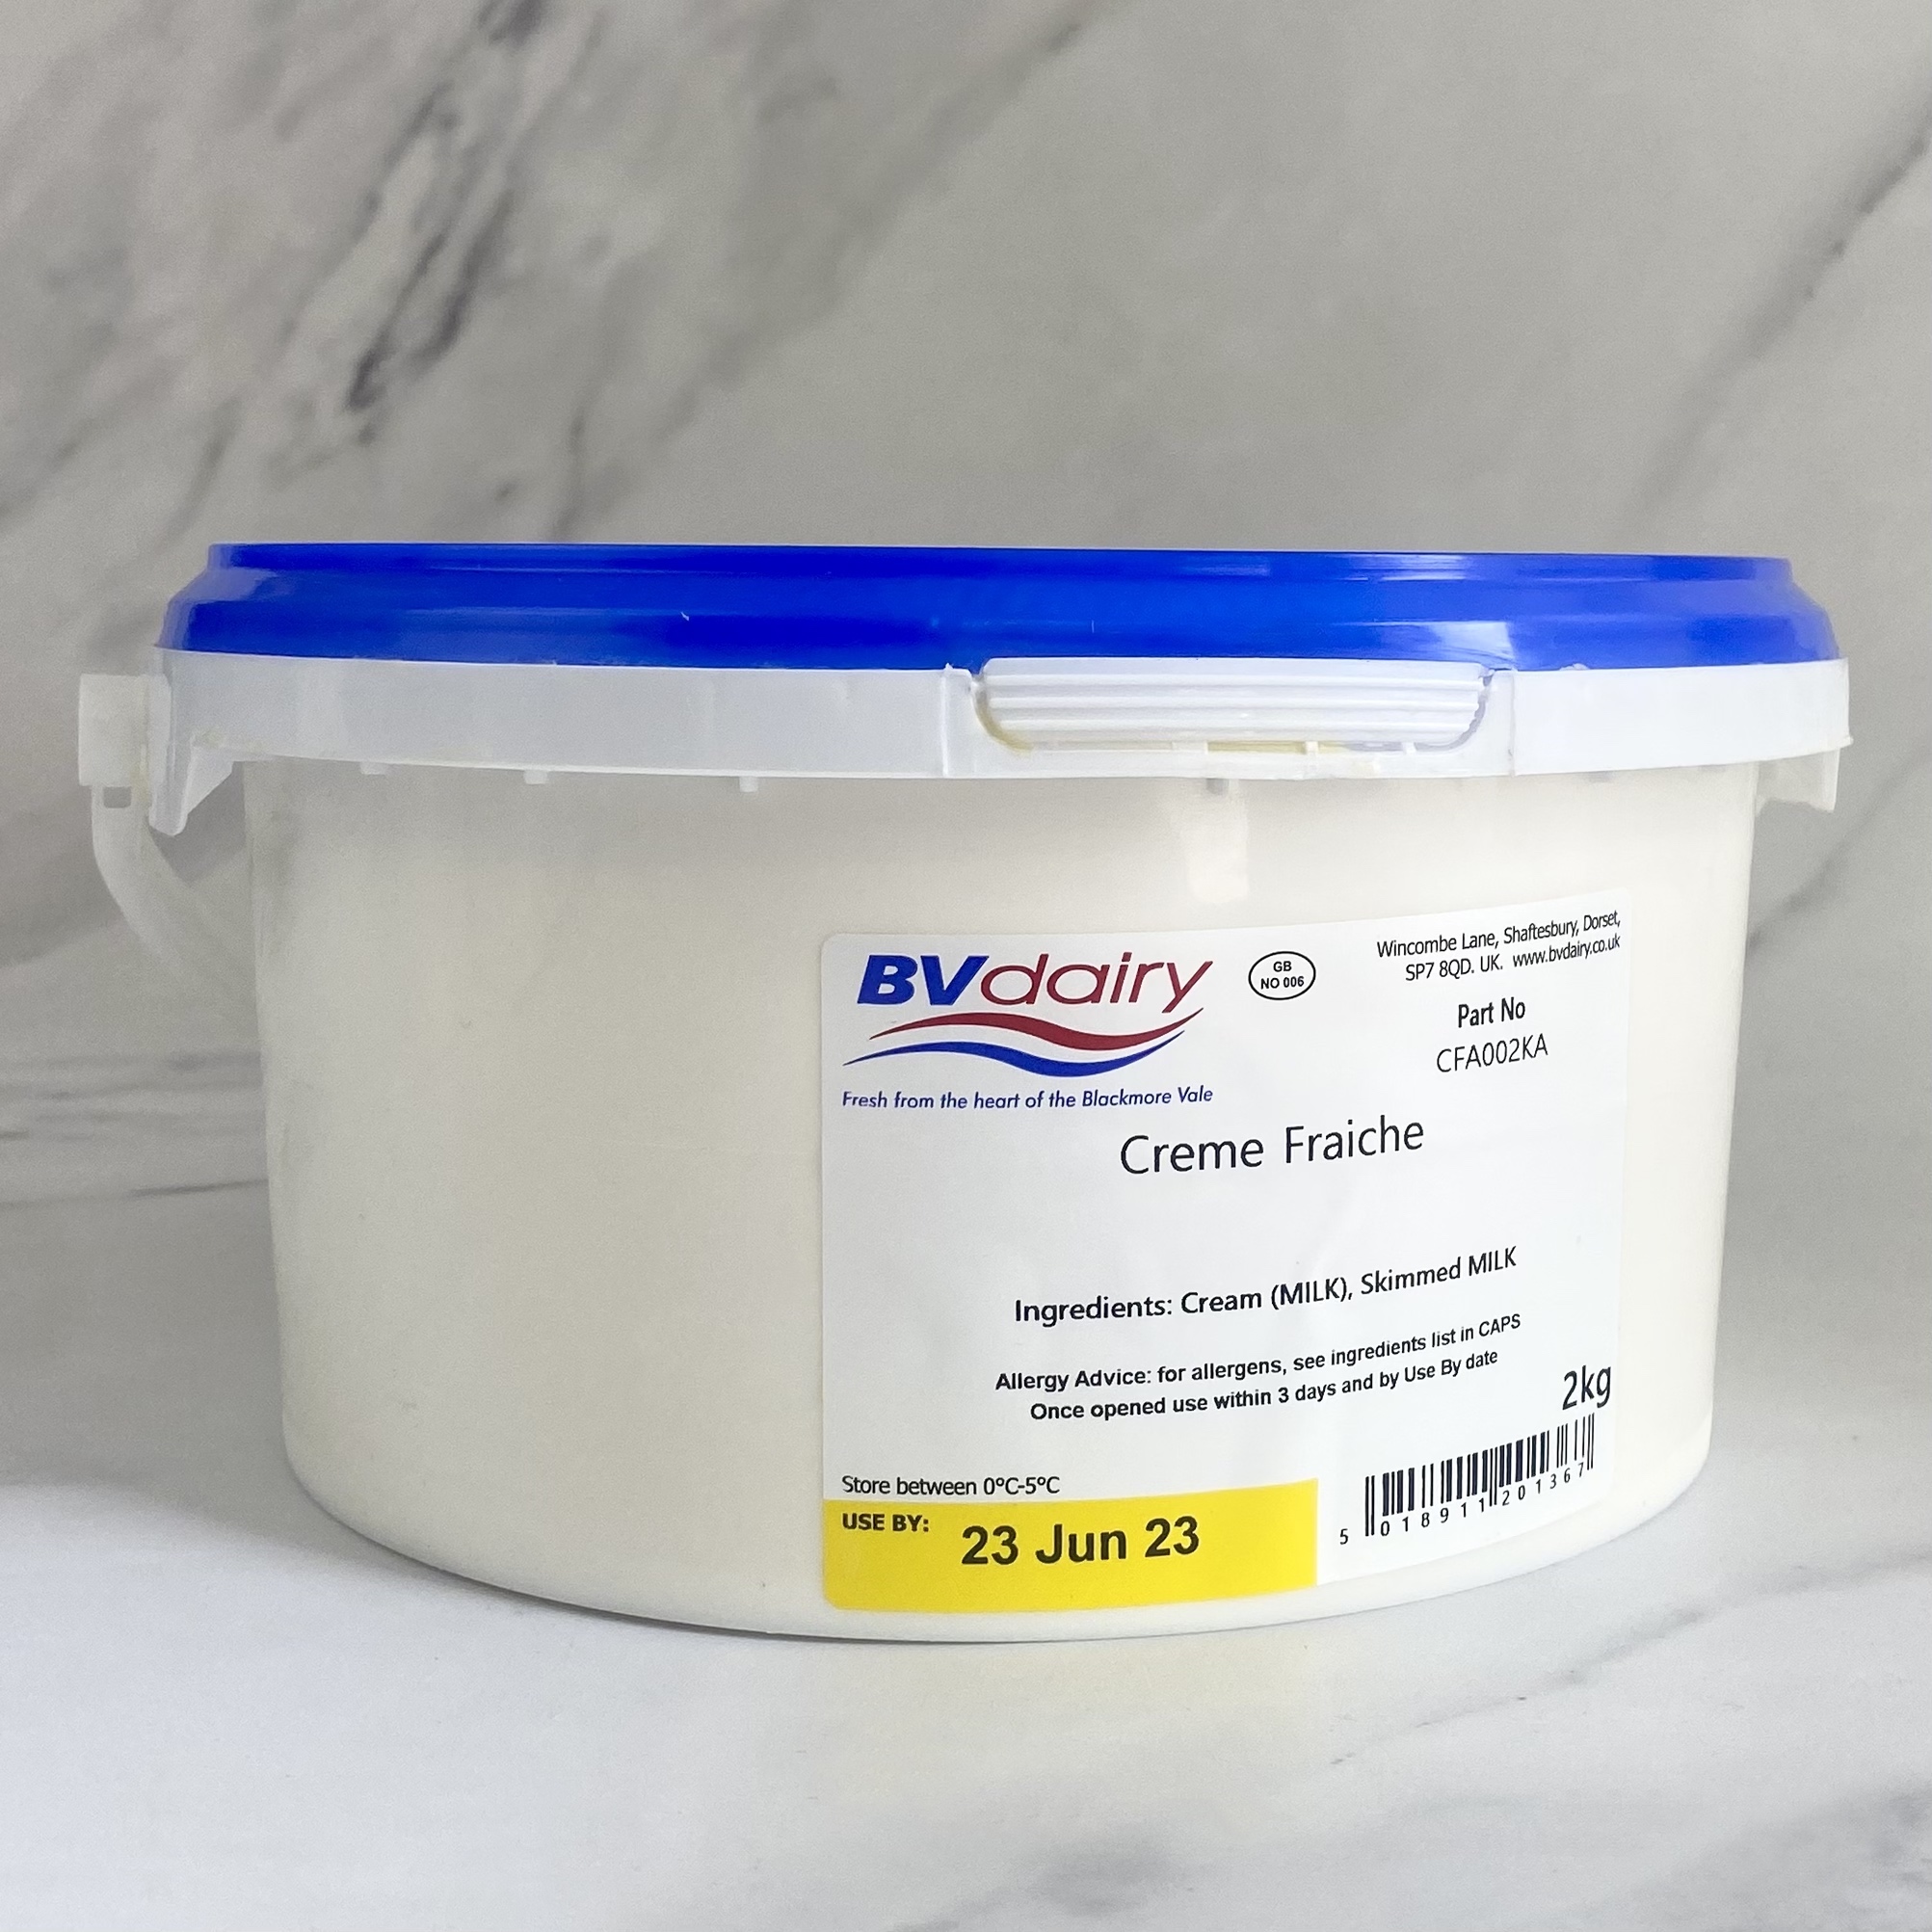 BV Dairy Crème Fraiche – 2kg